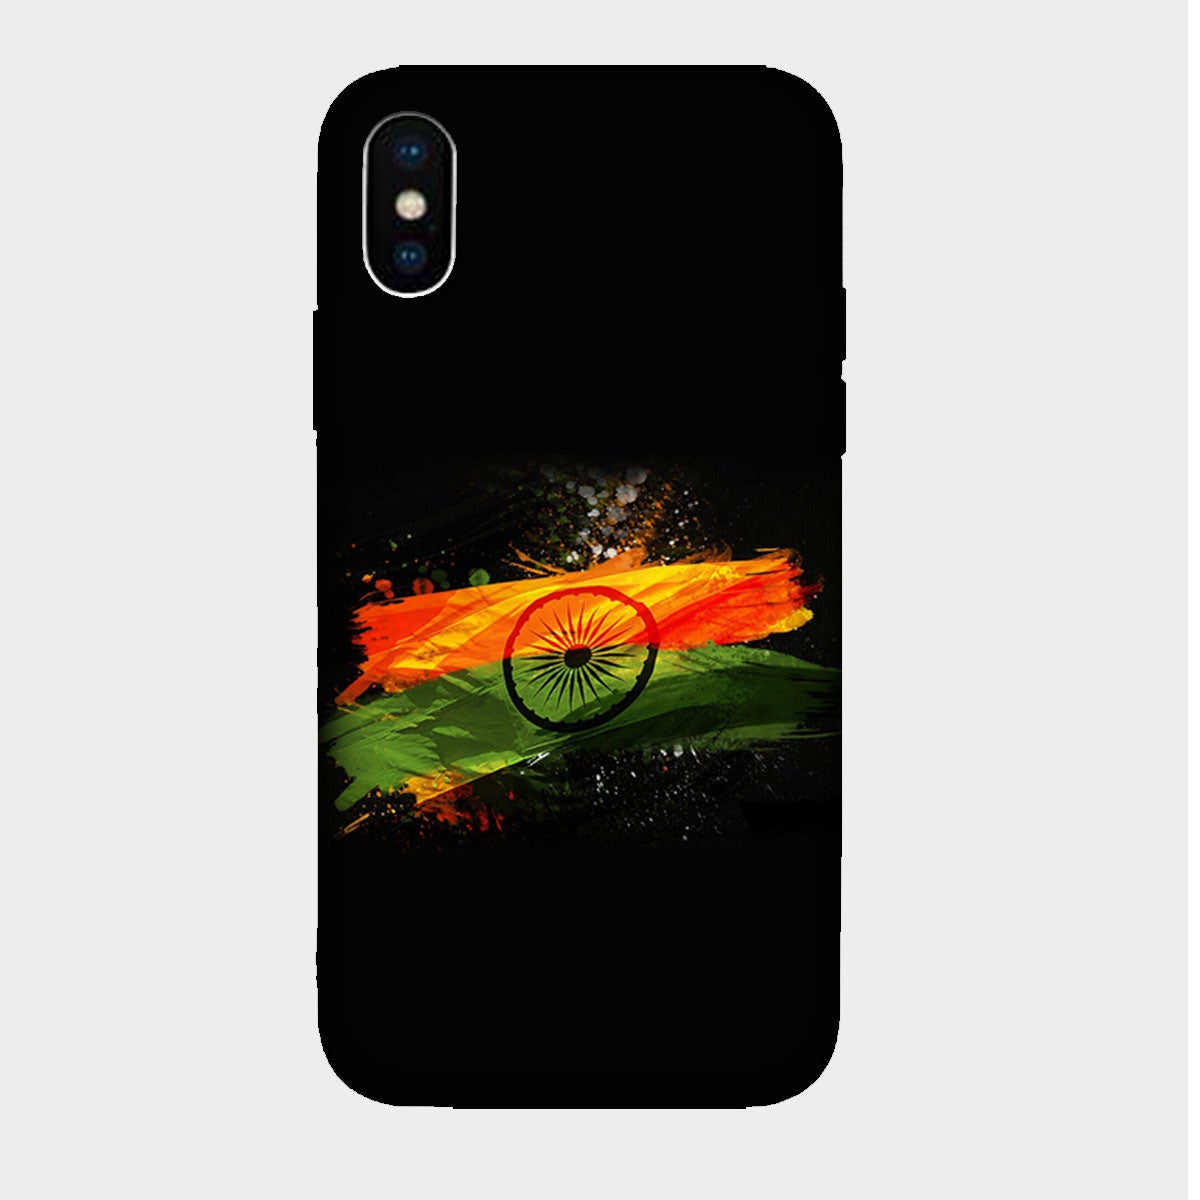 Indian Flag - Splash Color - Mobile Phone Cover - Hard Case